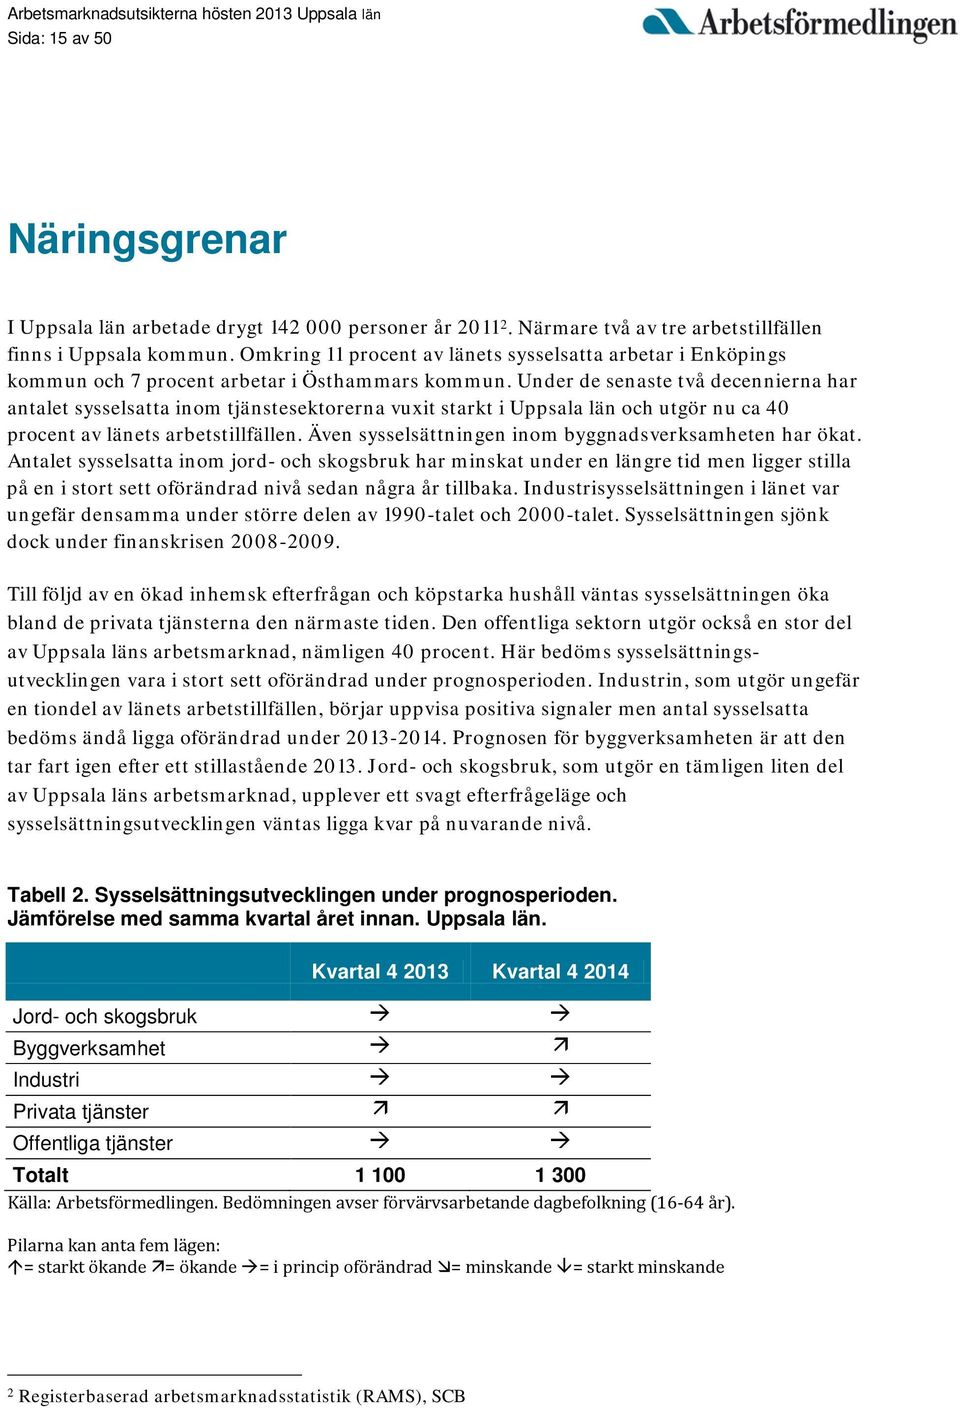 Under de senaste två decennierna har antalet sysselsatta inom tjänstesektorerna vuxit starkt i Uppsala län och utgör nu ca 40 procent av länets arbetstillfällen.